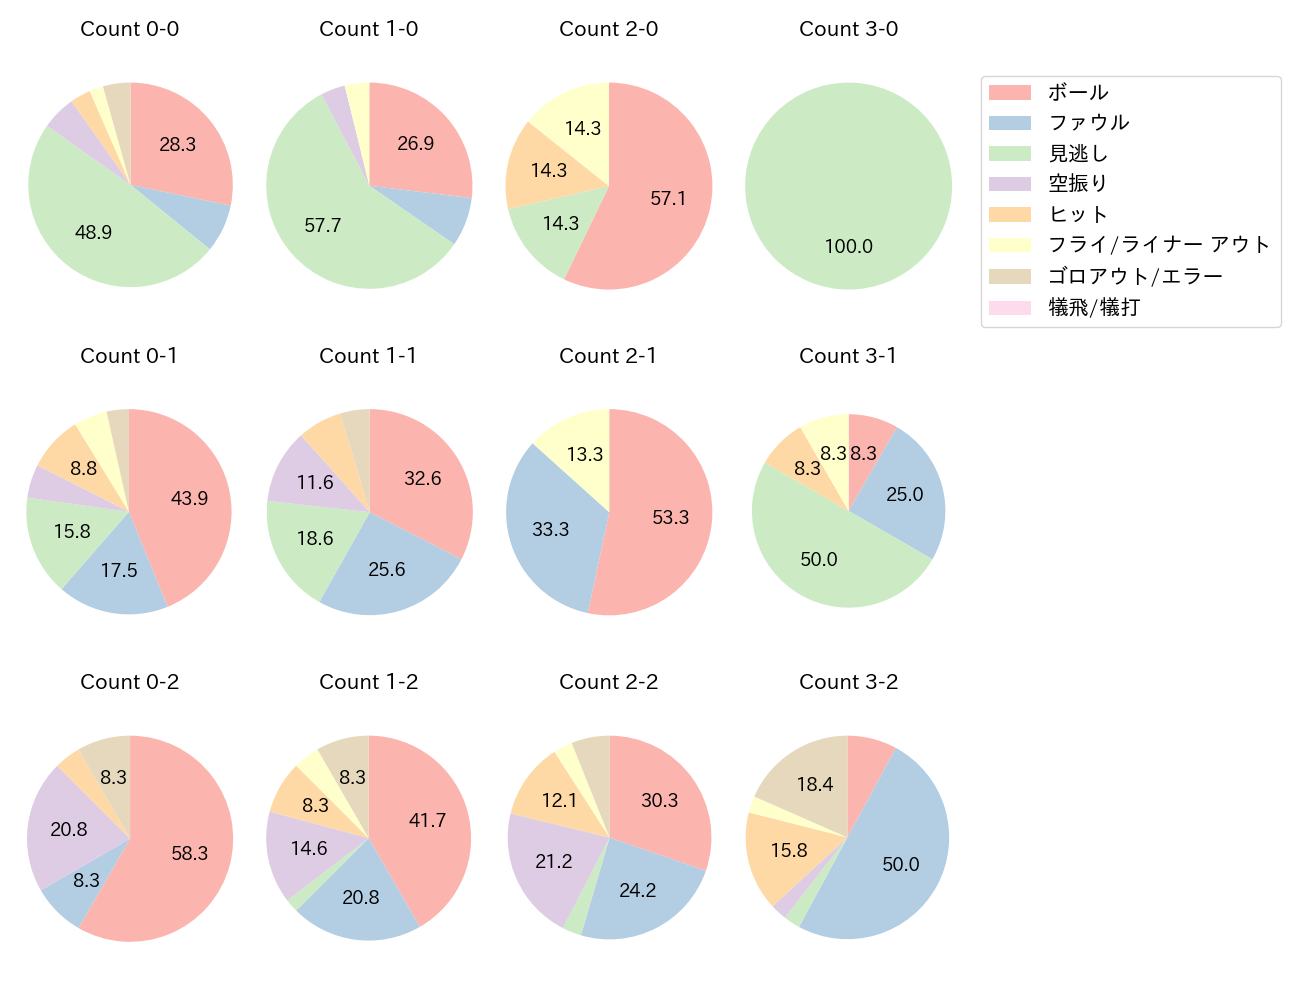 藤岡 裕大の球数分布(2021年9月)